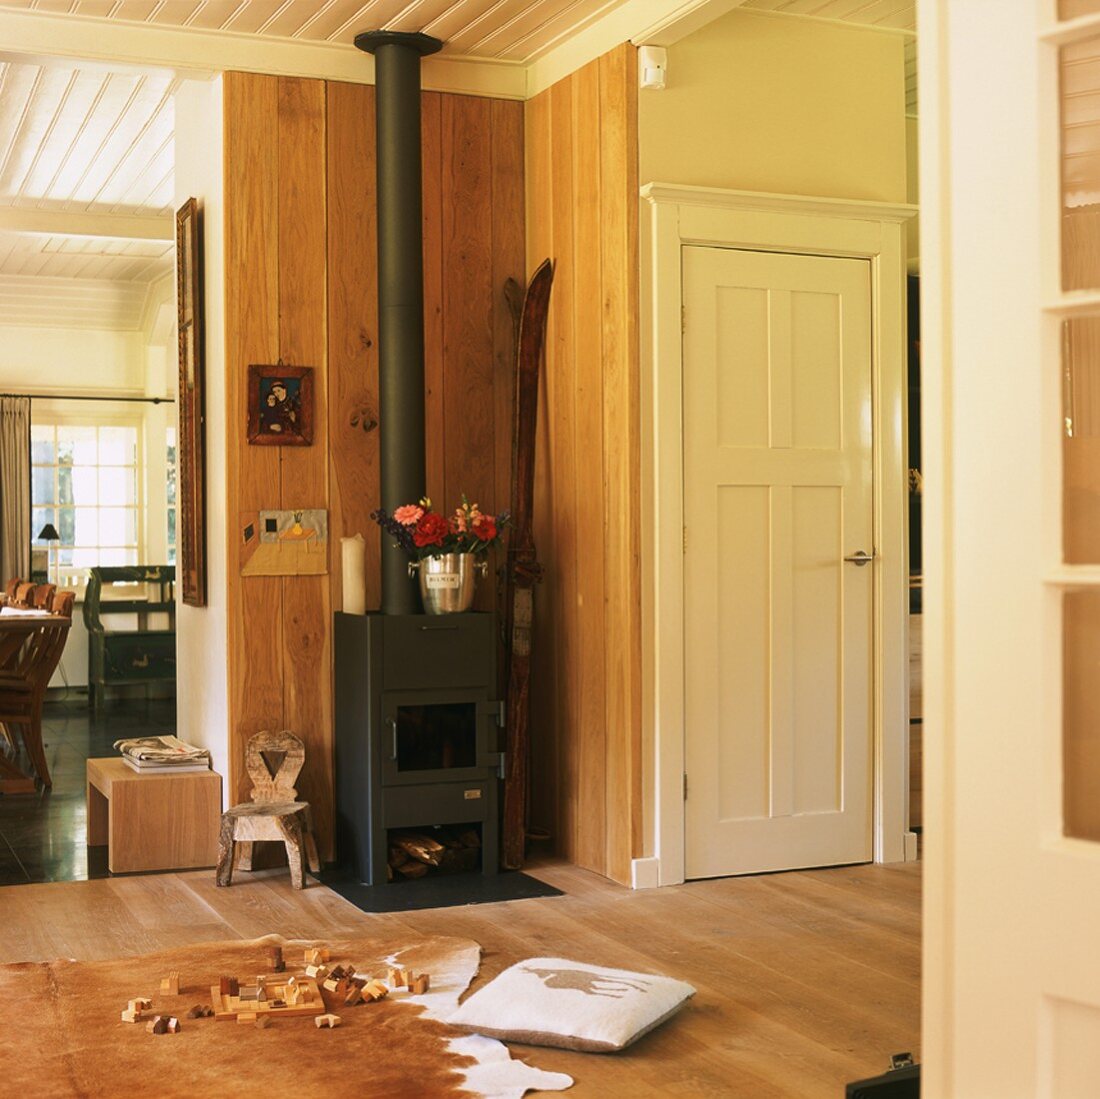 Holzverkleideter Wohnraum mit Kaminofen in einer Ecke und Tierfell als Teppich